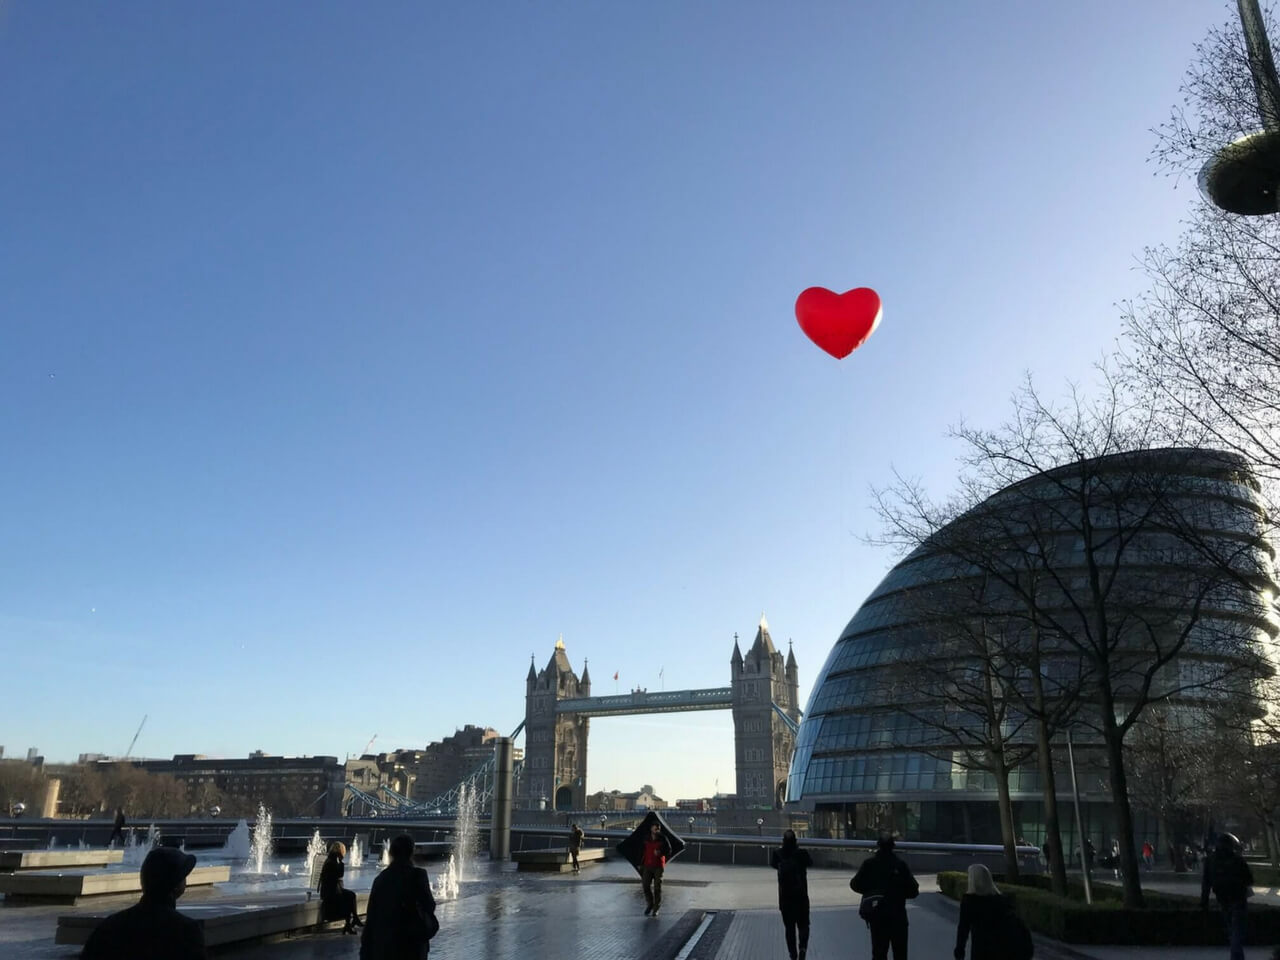 inflatable chubby heart on London skyline